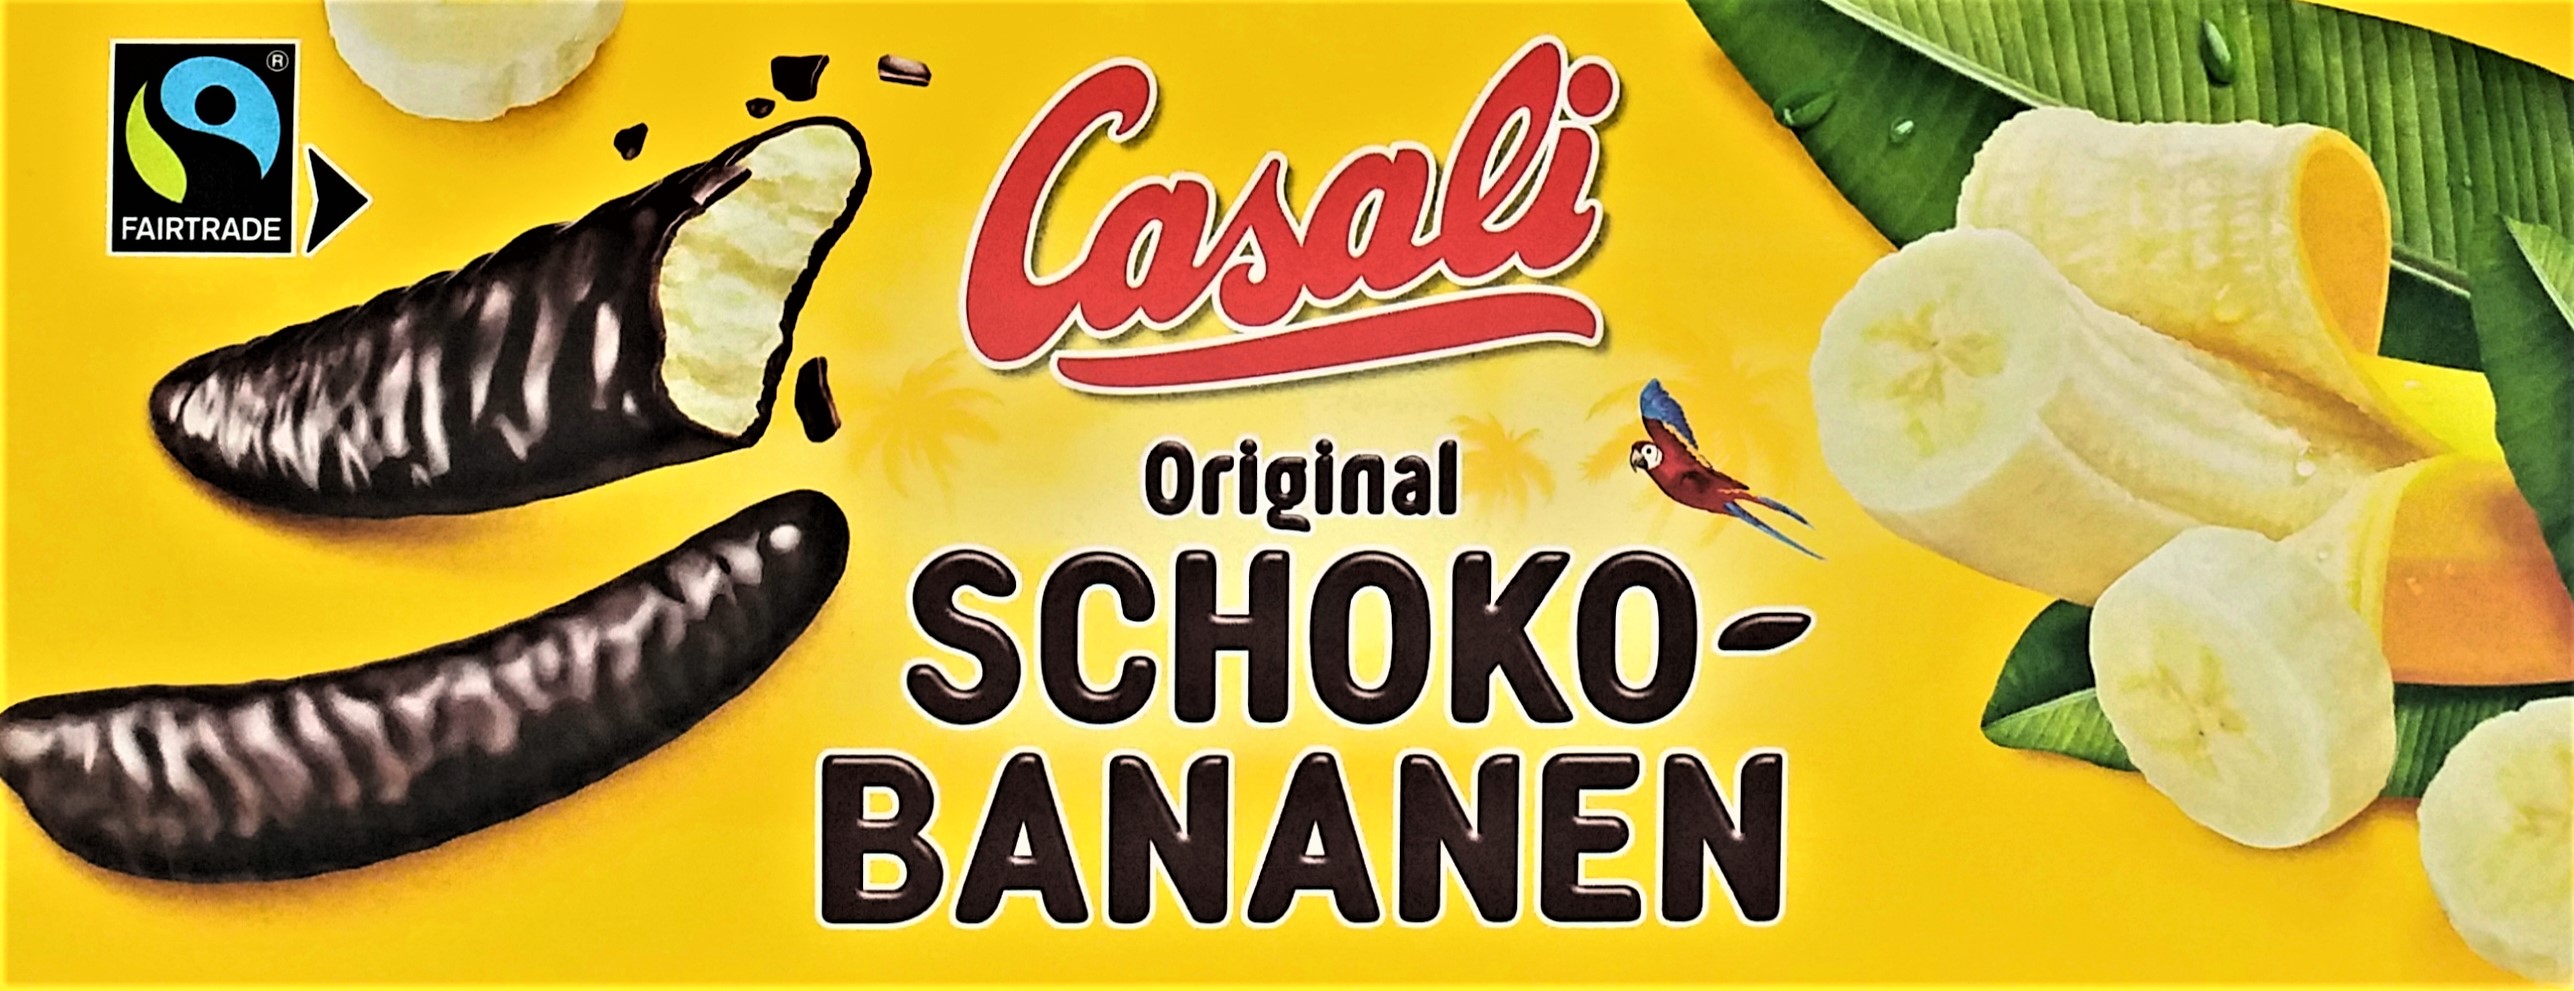 Casali Schoko-Bananen Karton mit 10 Schachtel  je  24ST 300g, gesamt 3 kg